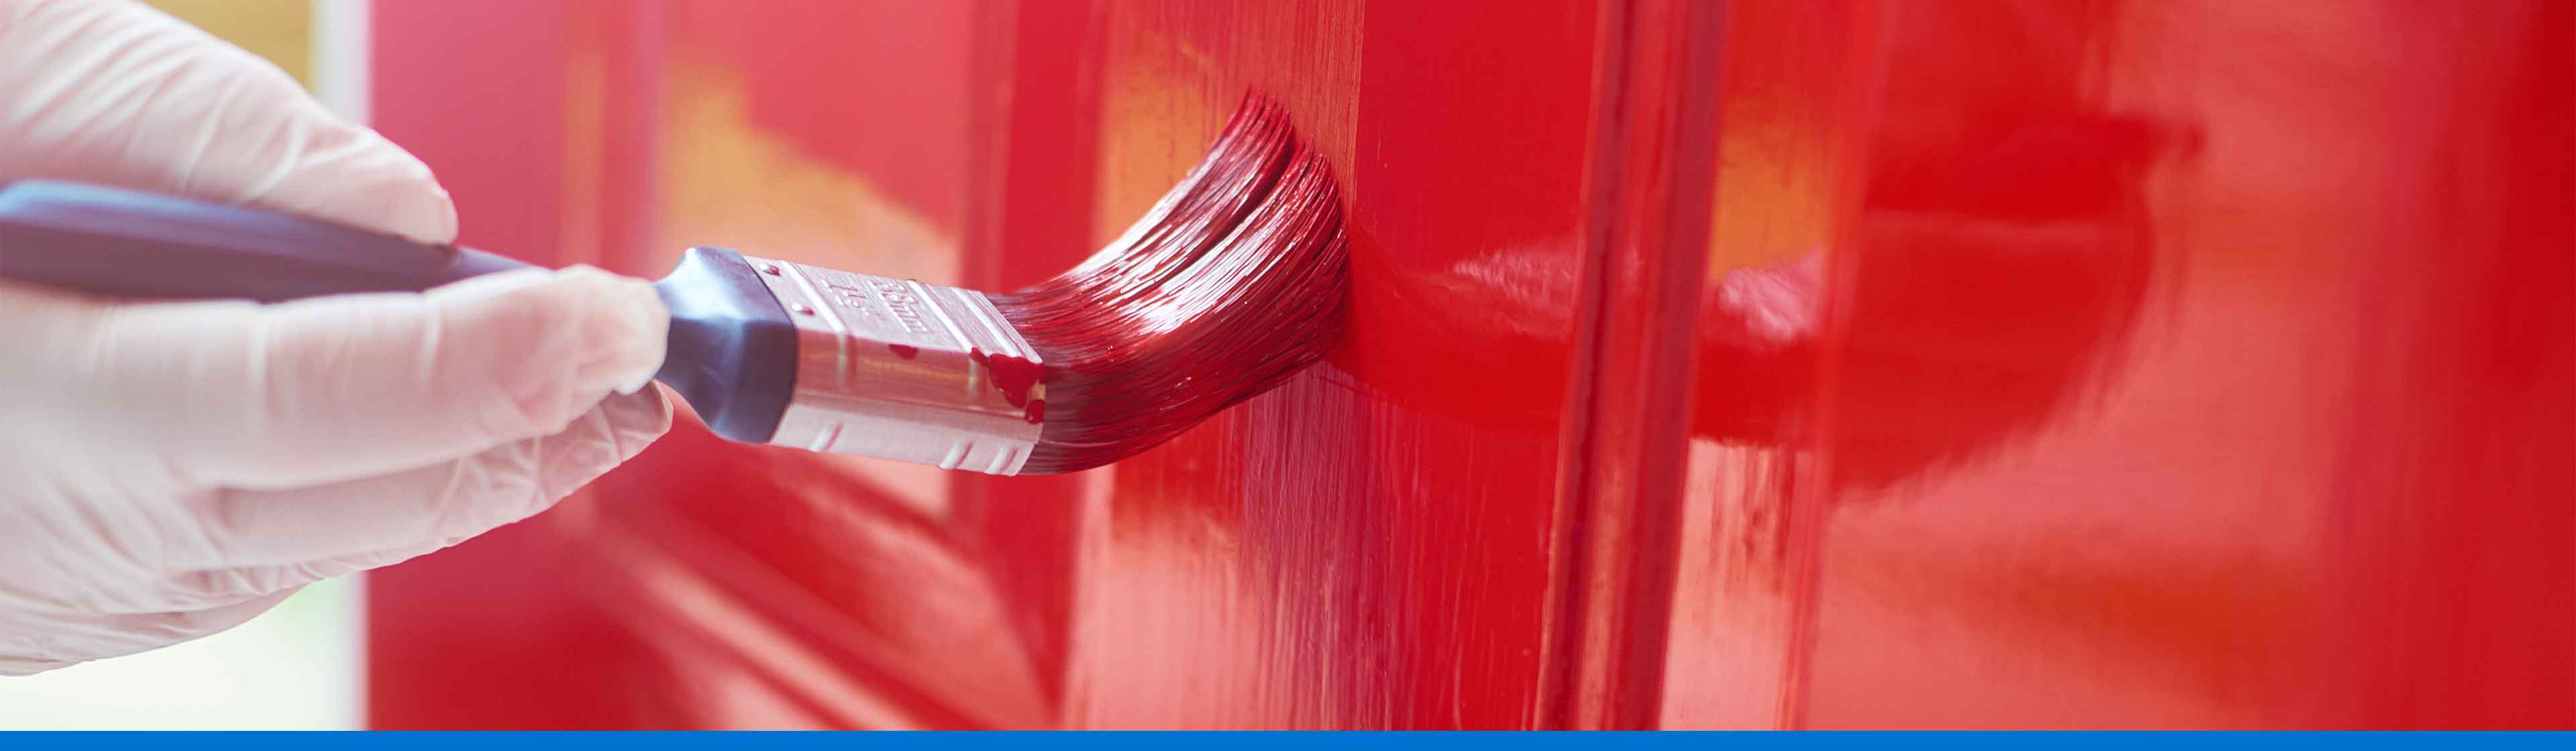 pintar puerta con color rojo